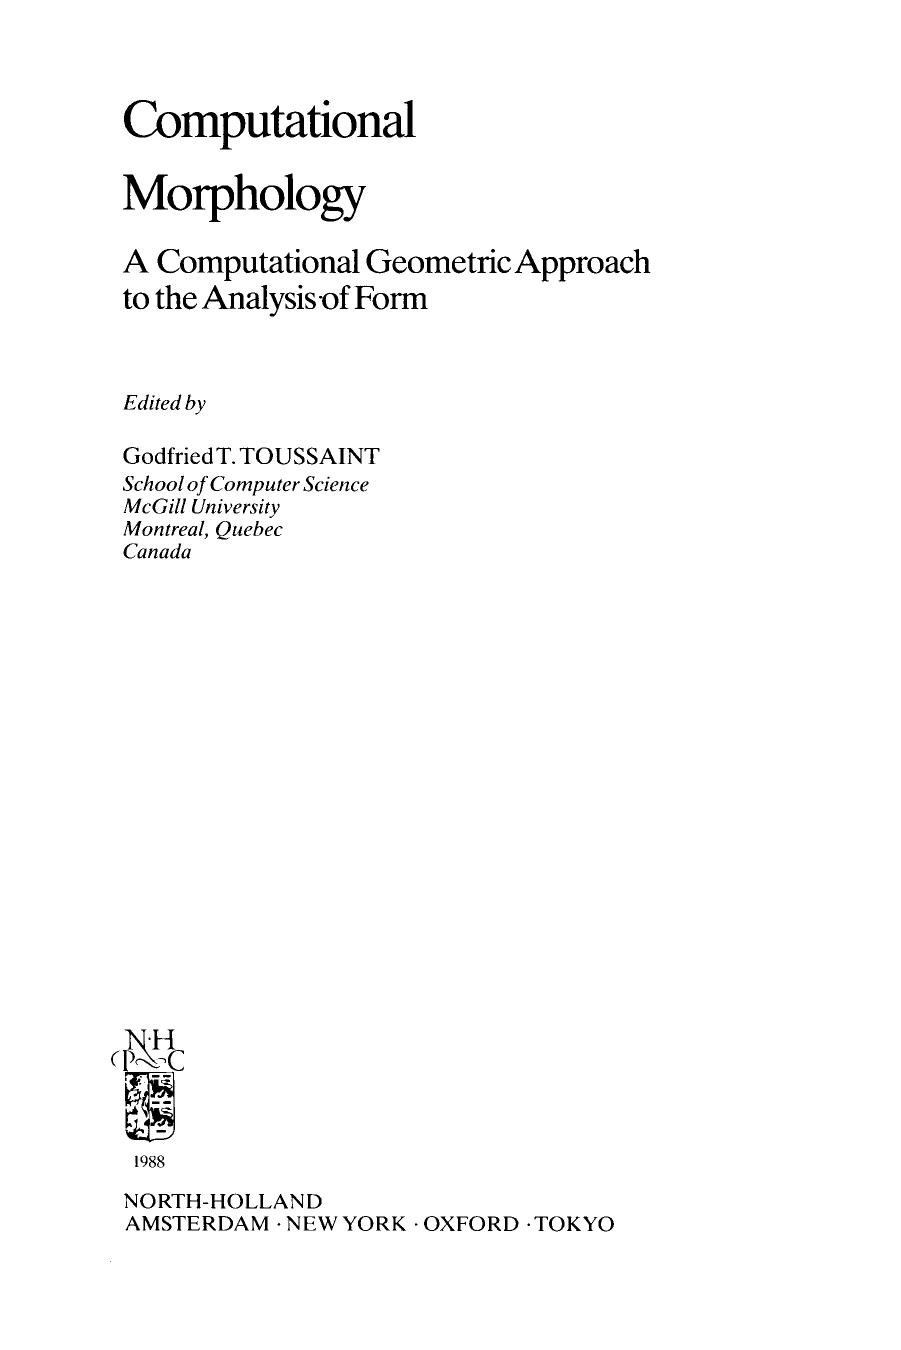 Computational Morphology: A Computational Geometric Approach to the Analysis of Form